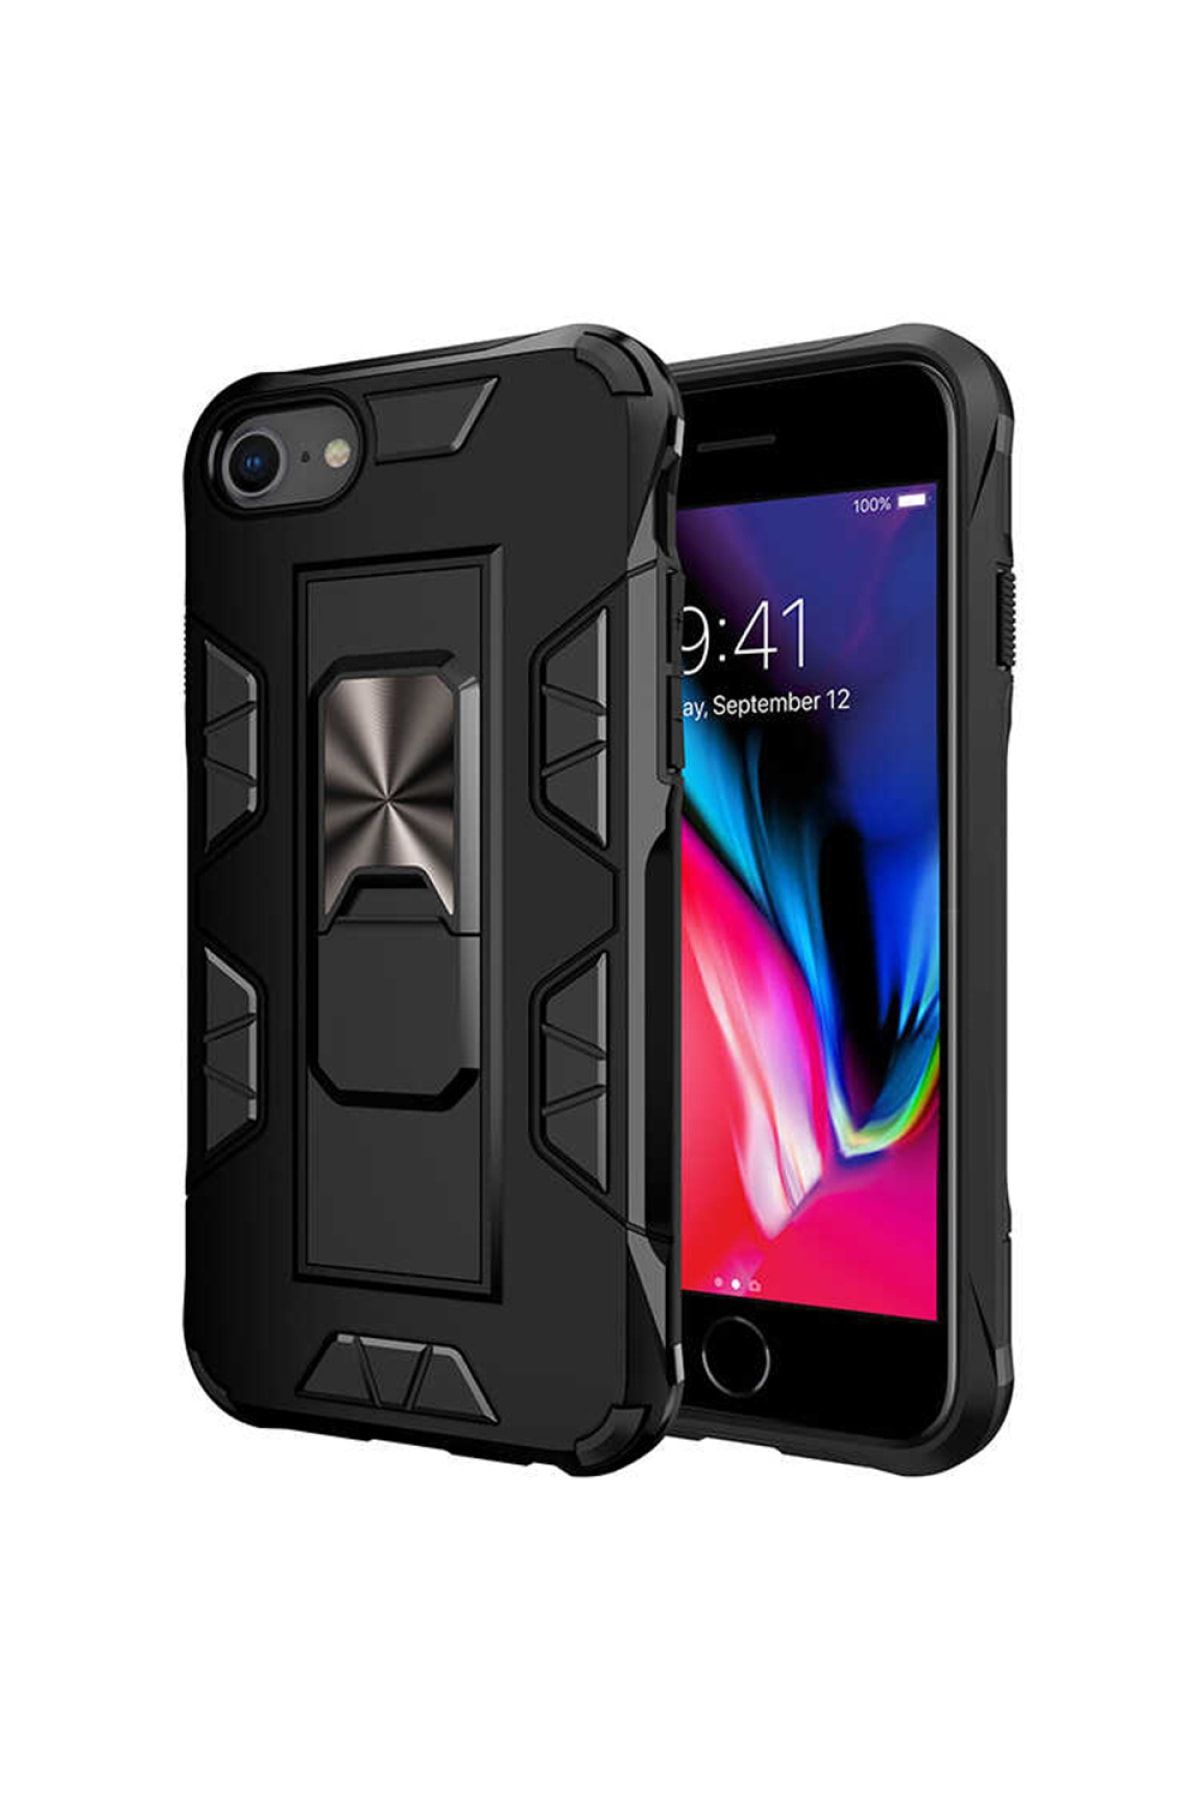 Mobilteam Apple Iphone 6s- Siyah Volve Defender Shock Proof Kapak